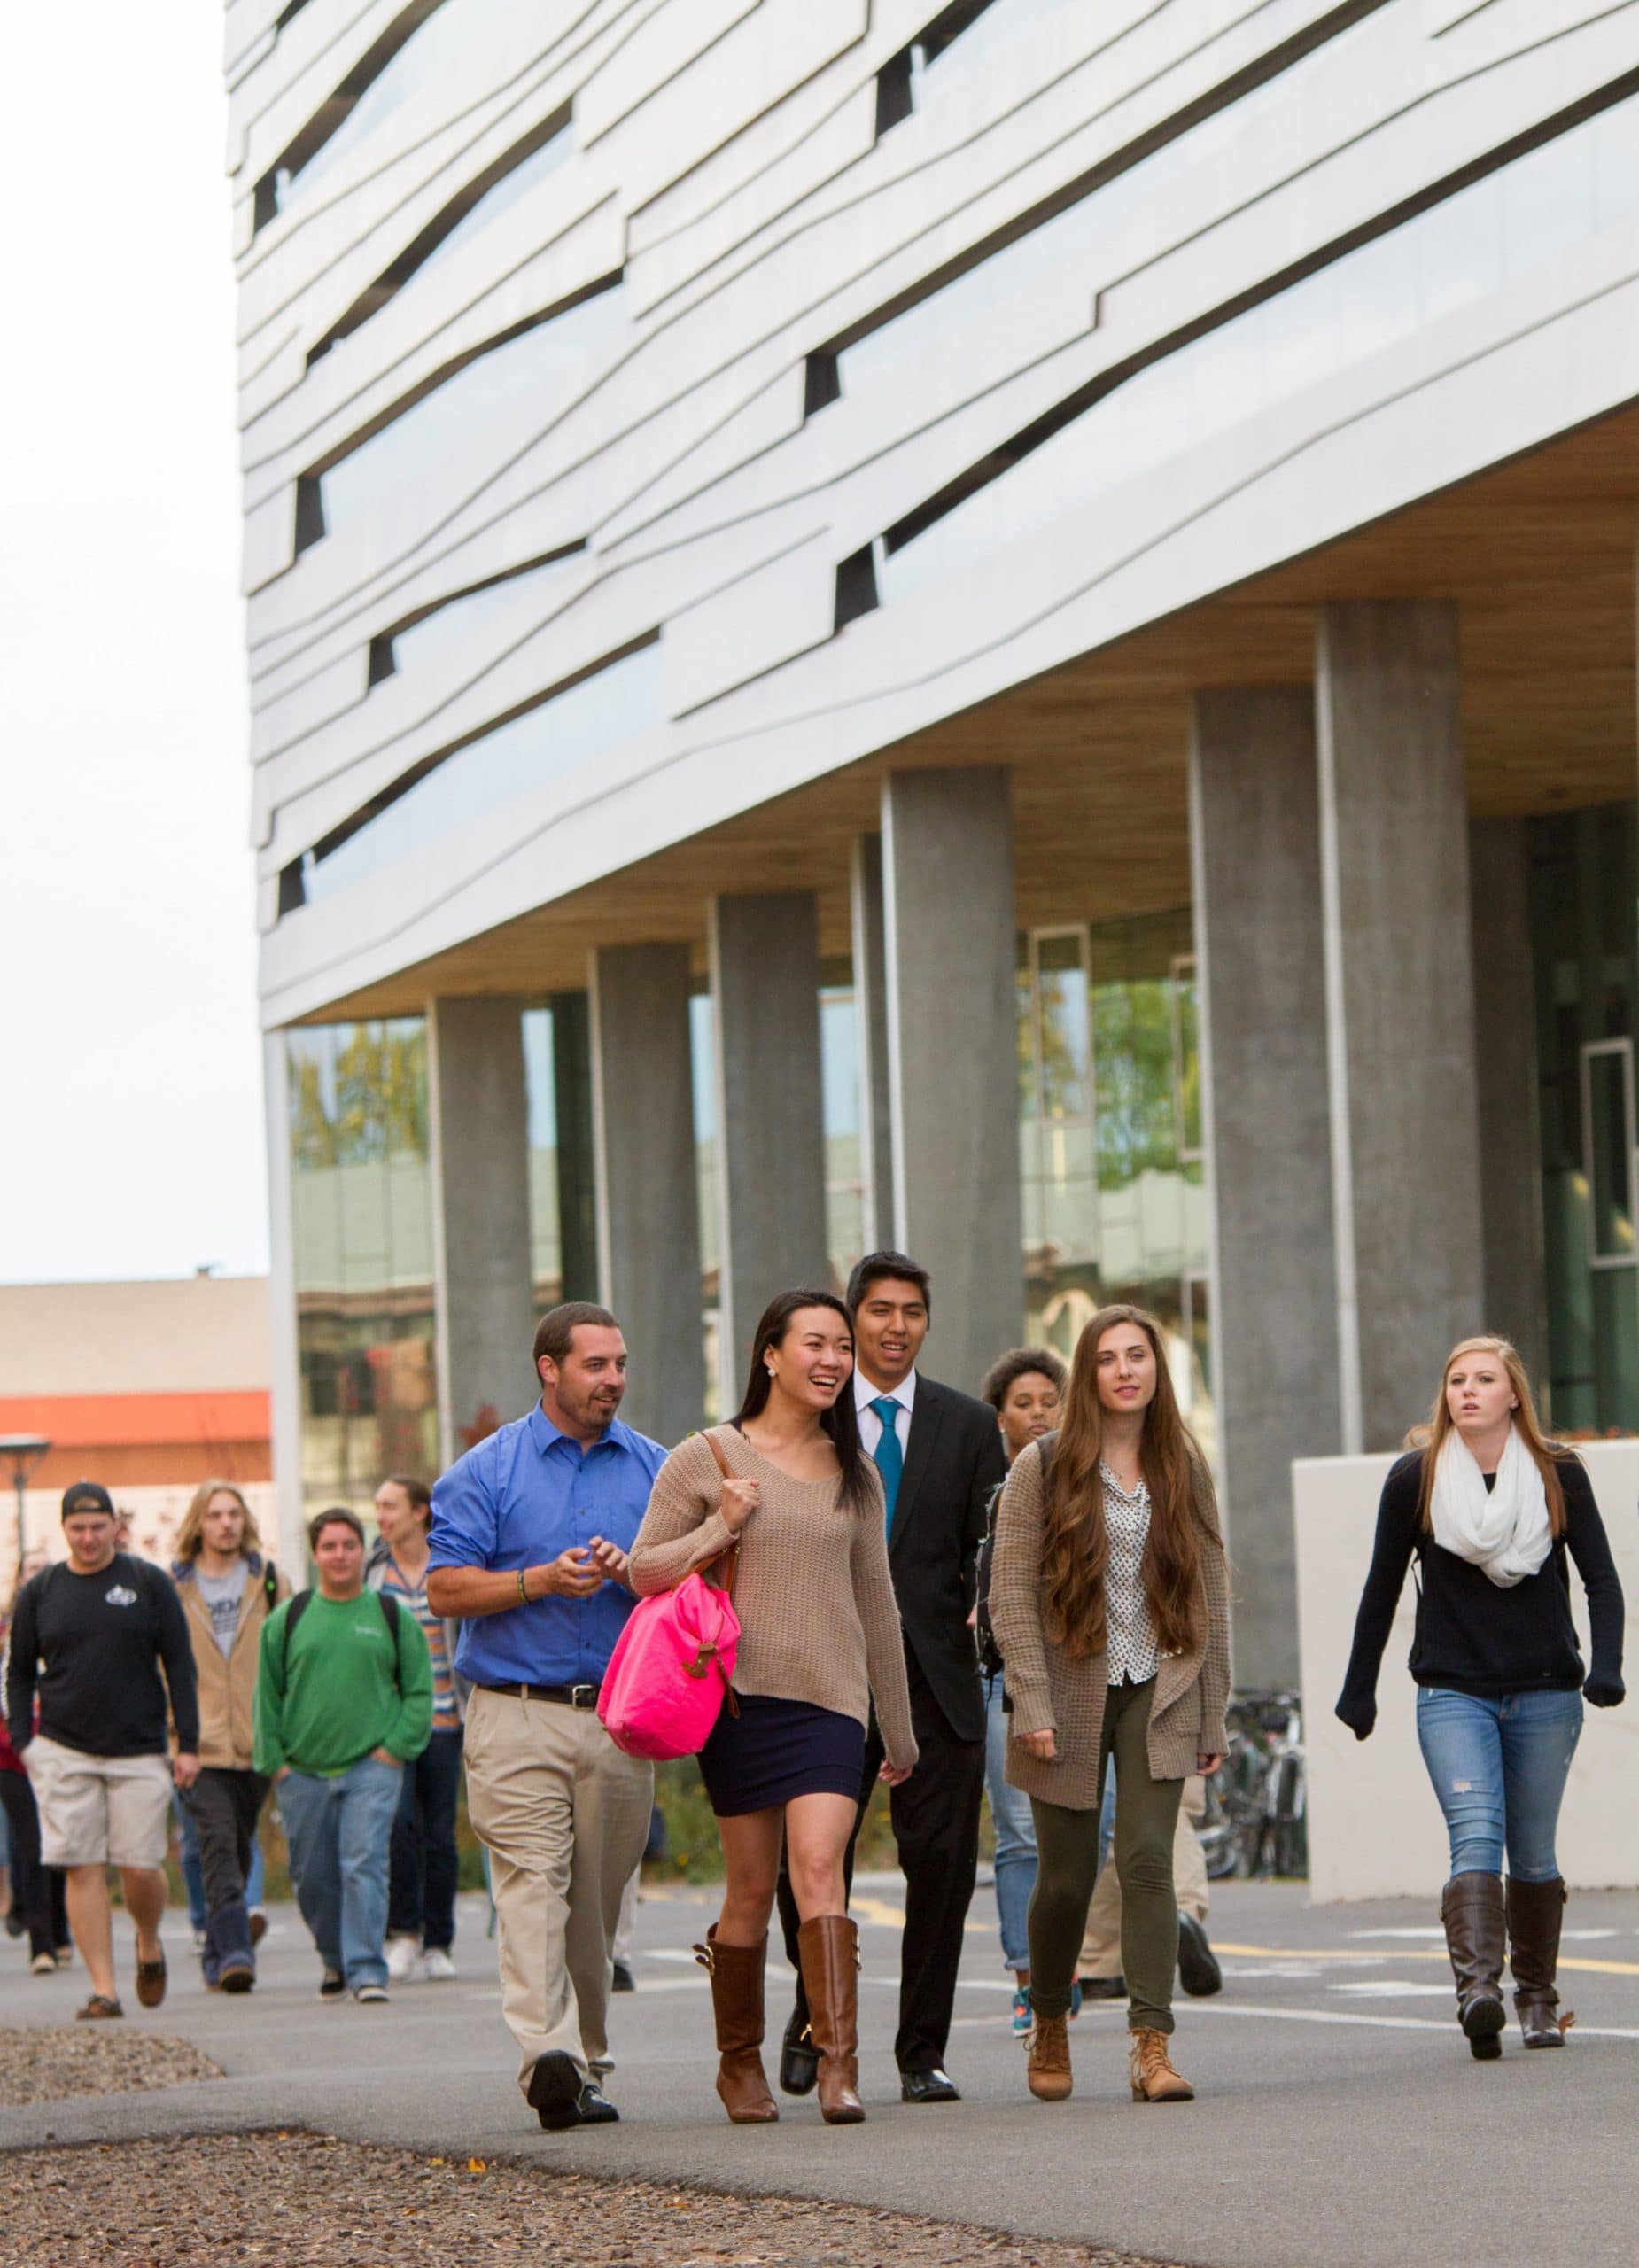 NAU students walking through campus.